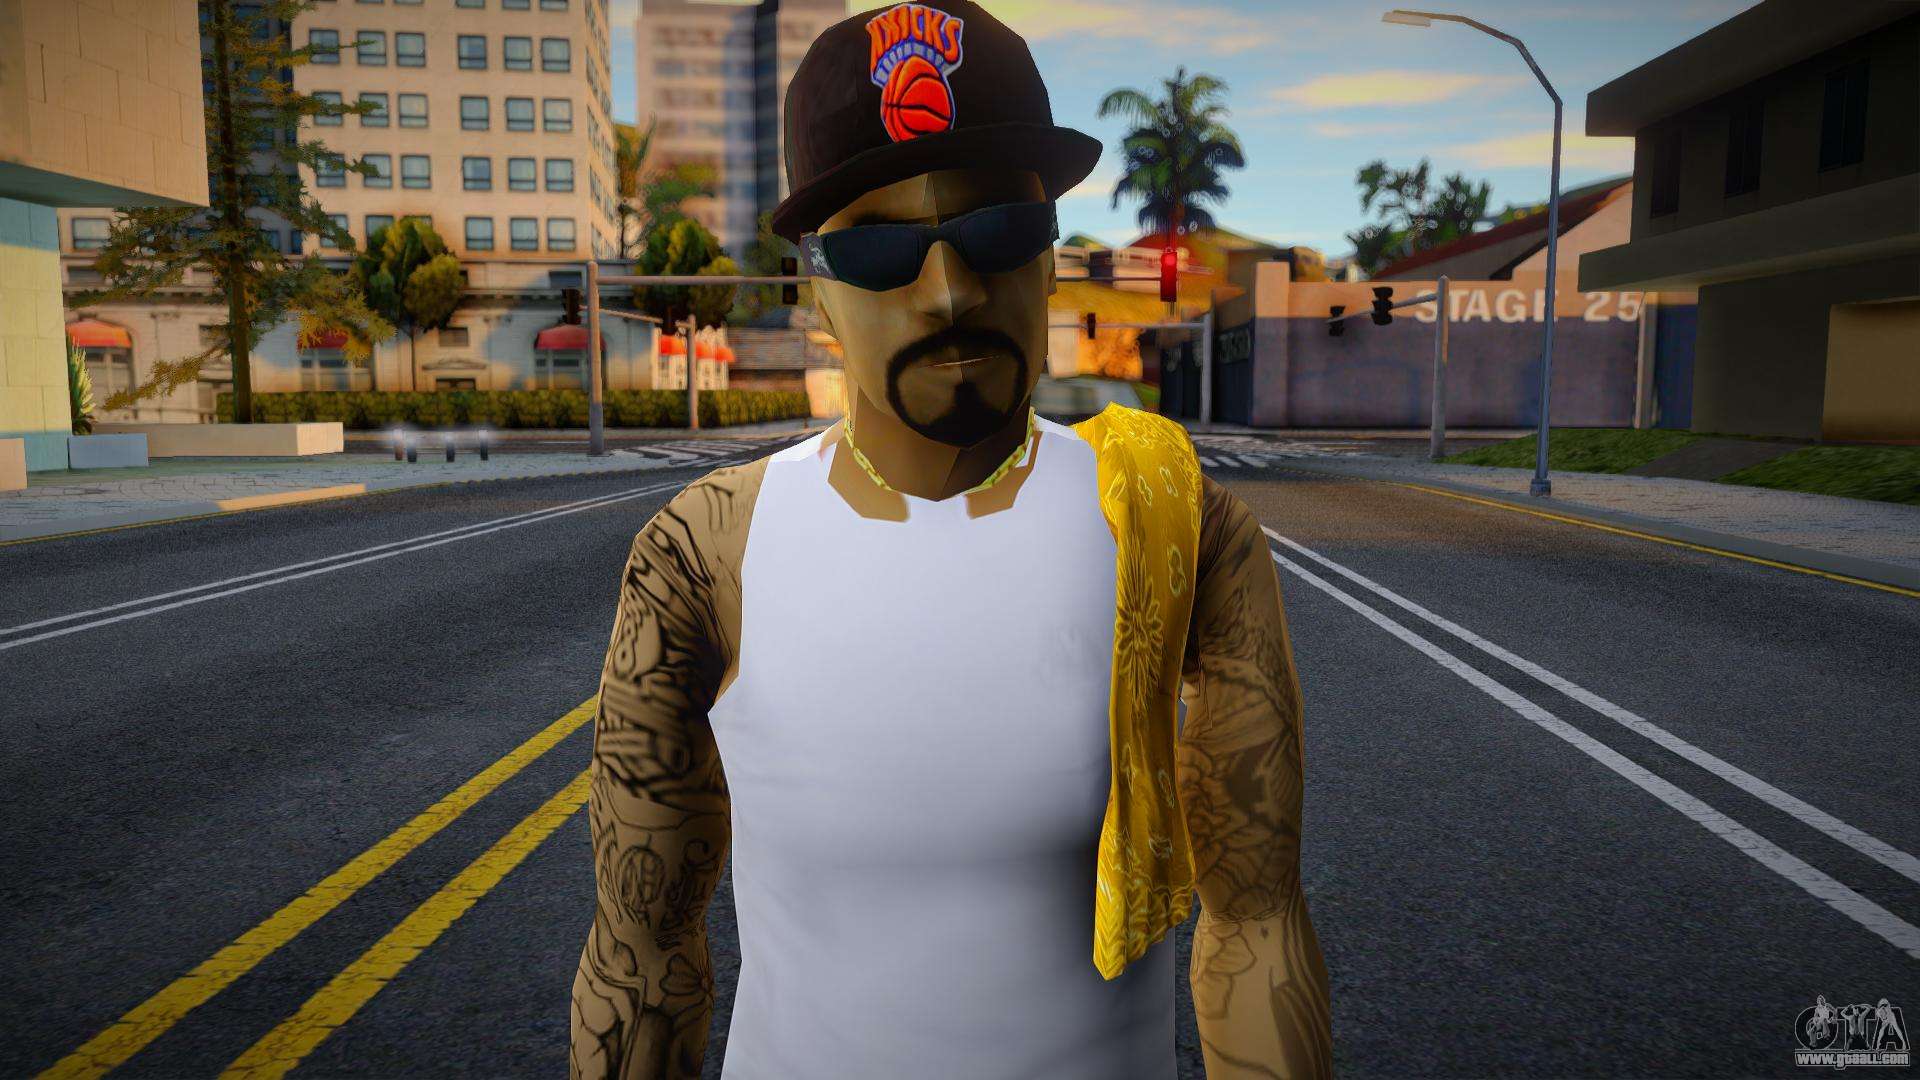 Los Santos Vagos member for GTA San Andreas